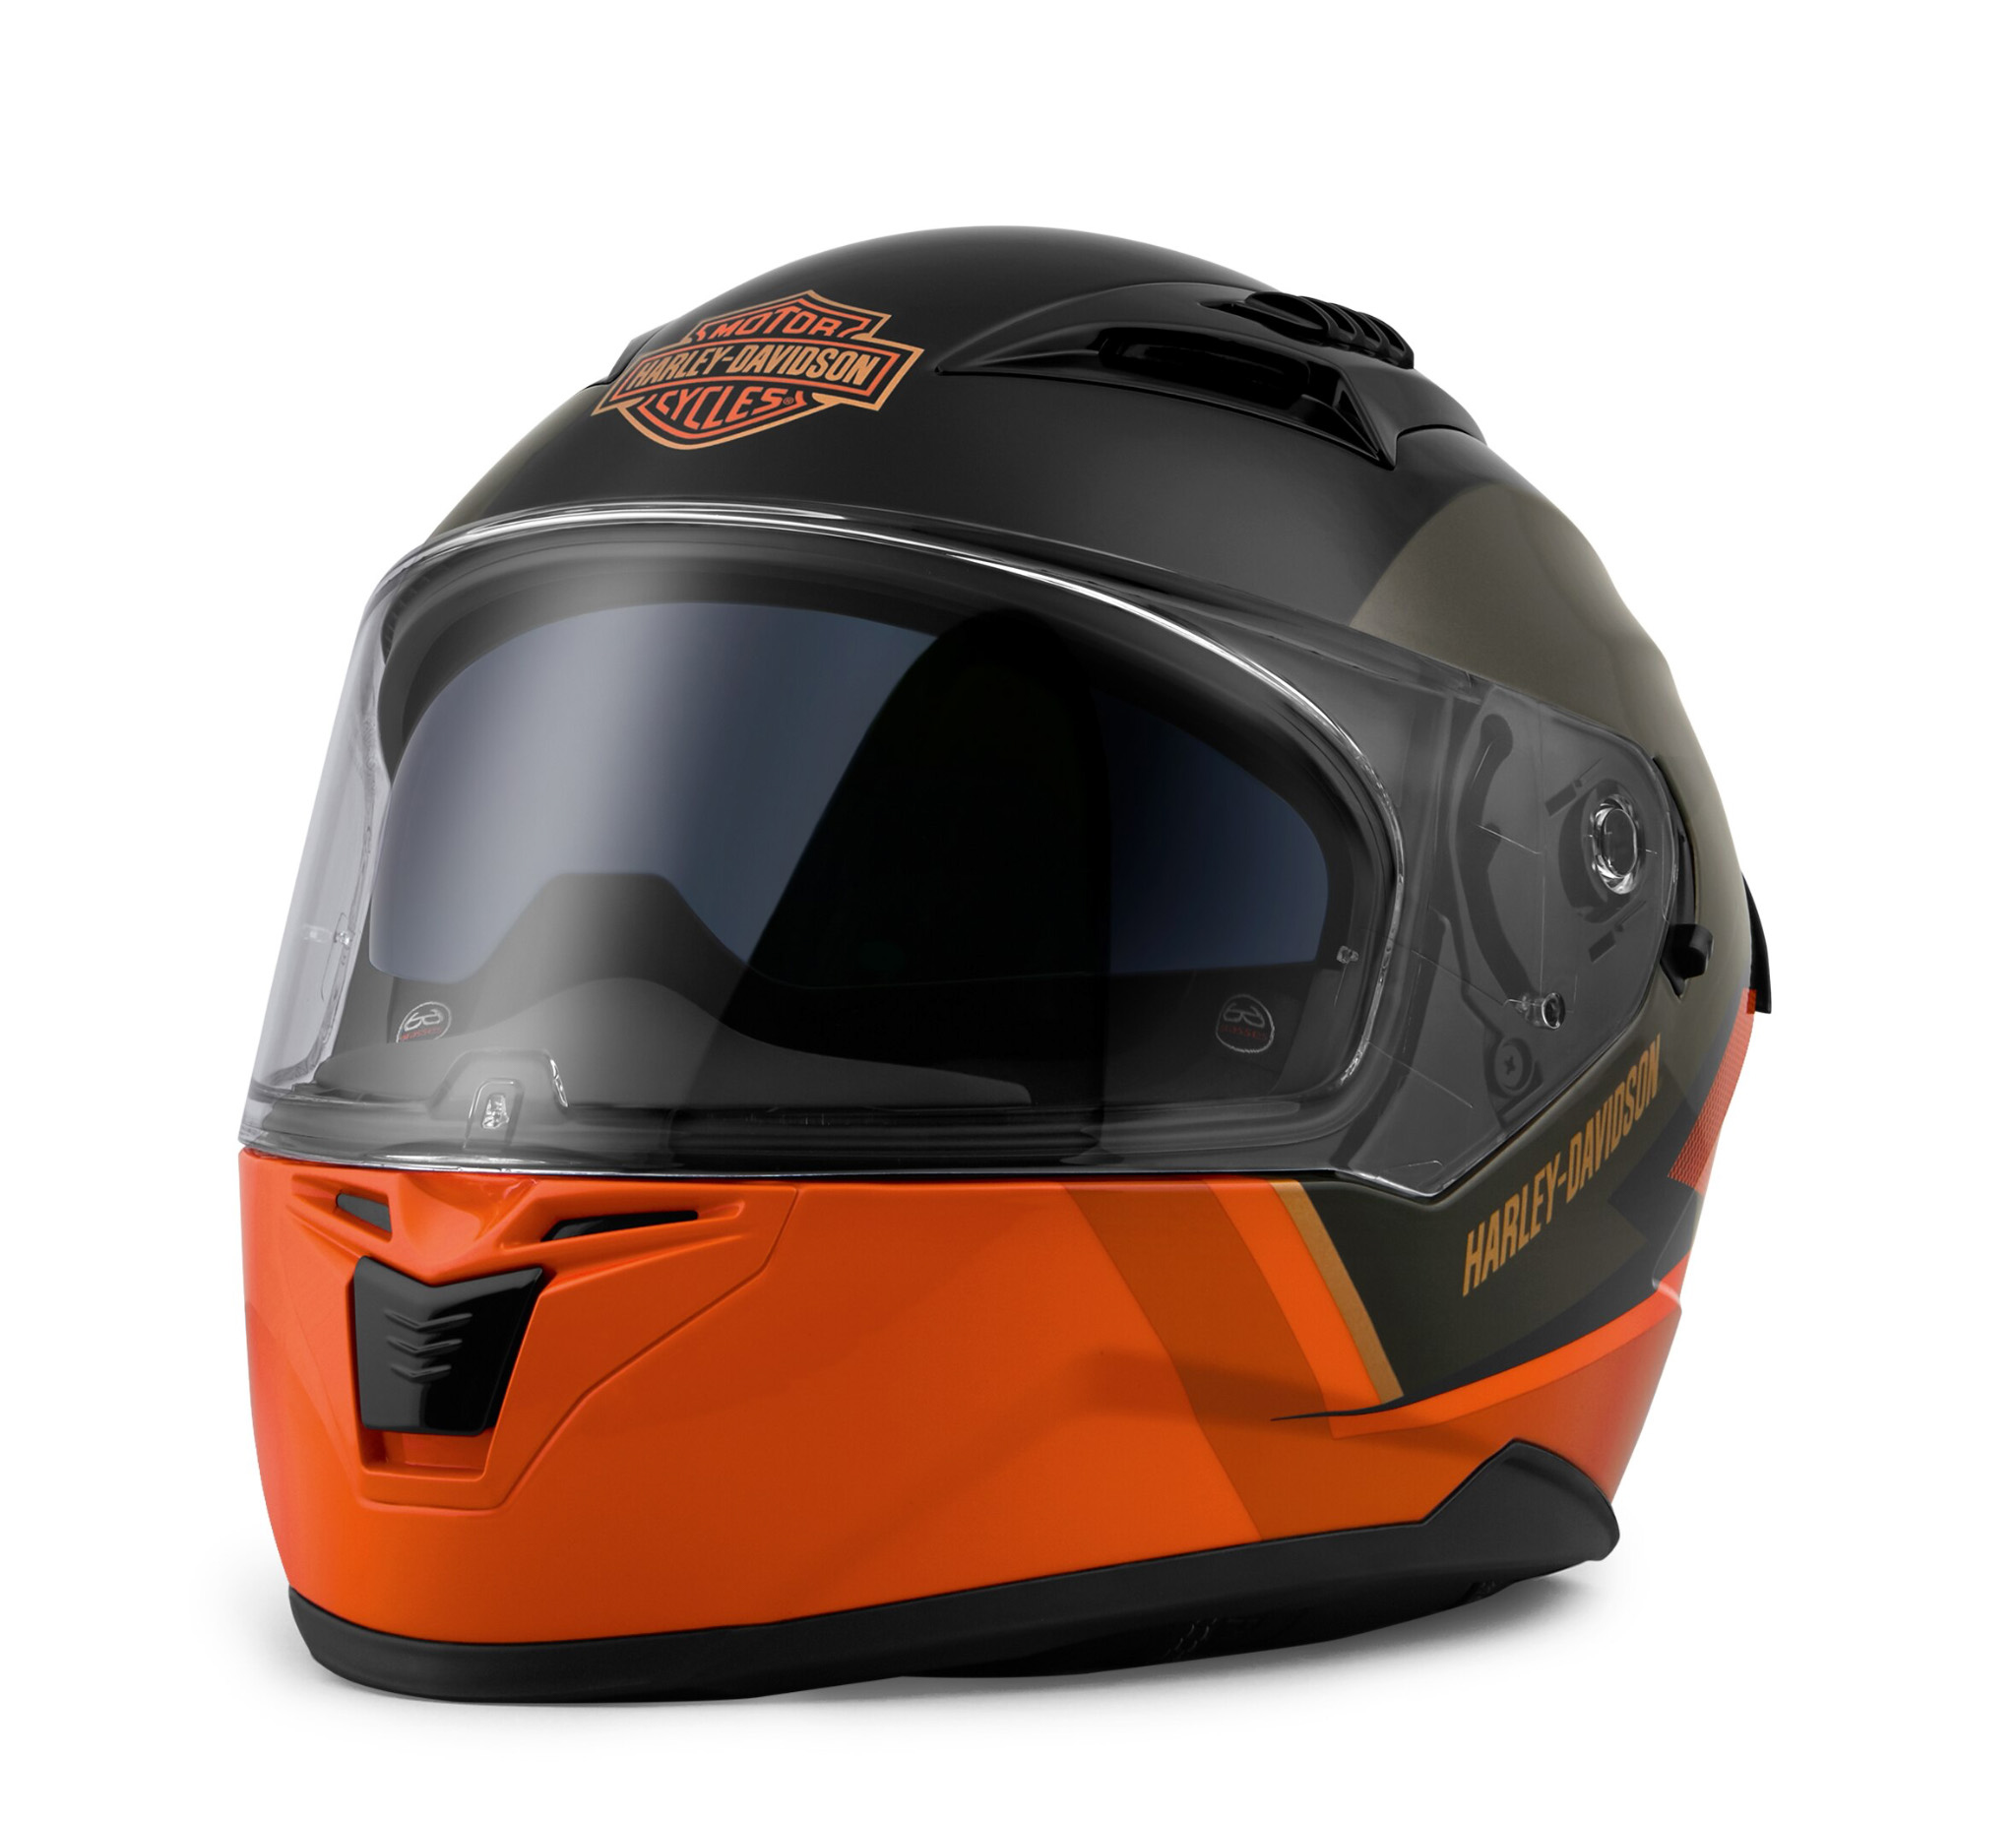 Killian M05 Full Face Helmet 98114 20vx Harley Davidson Indonesia